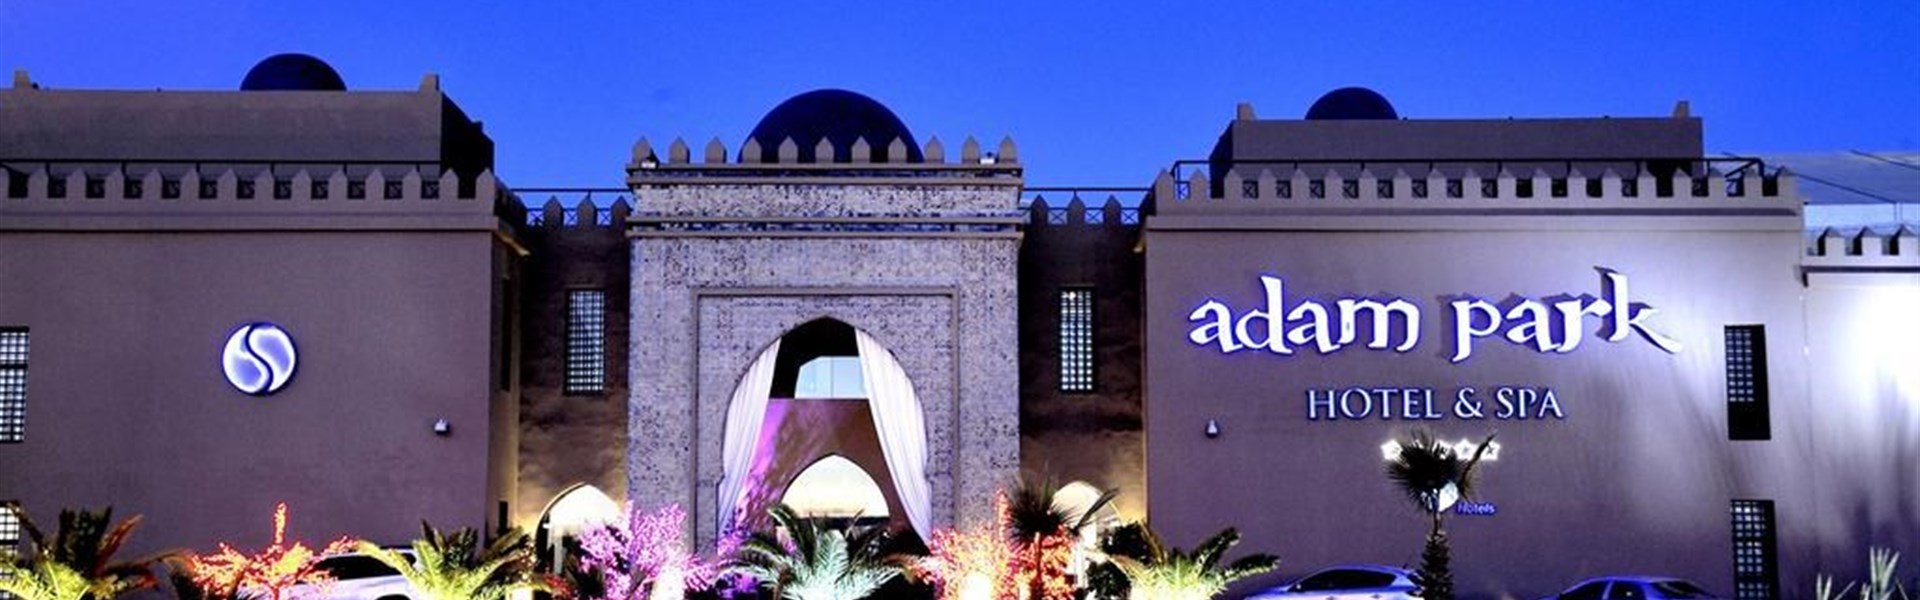 Marco Polo - Adam Park Marrakech Hotel & Spa - Vstupní brána hotelu.